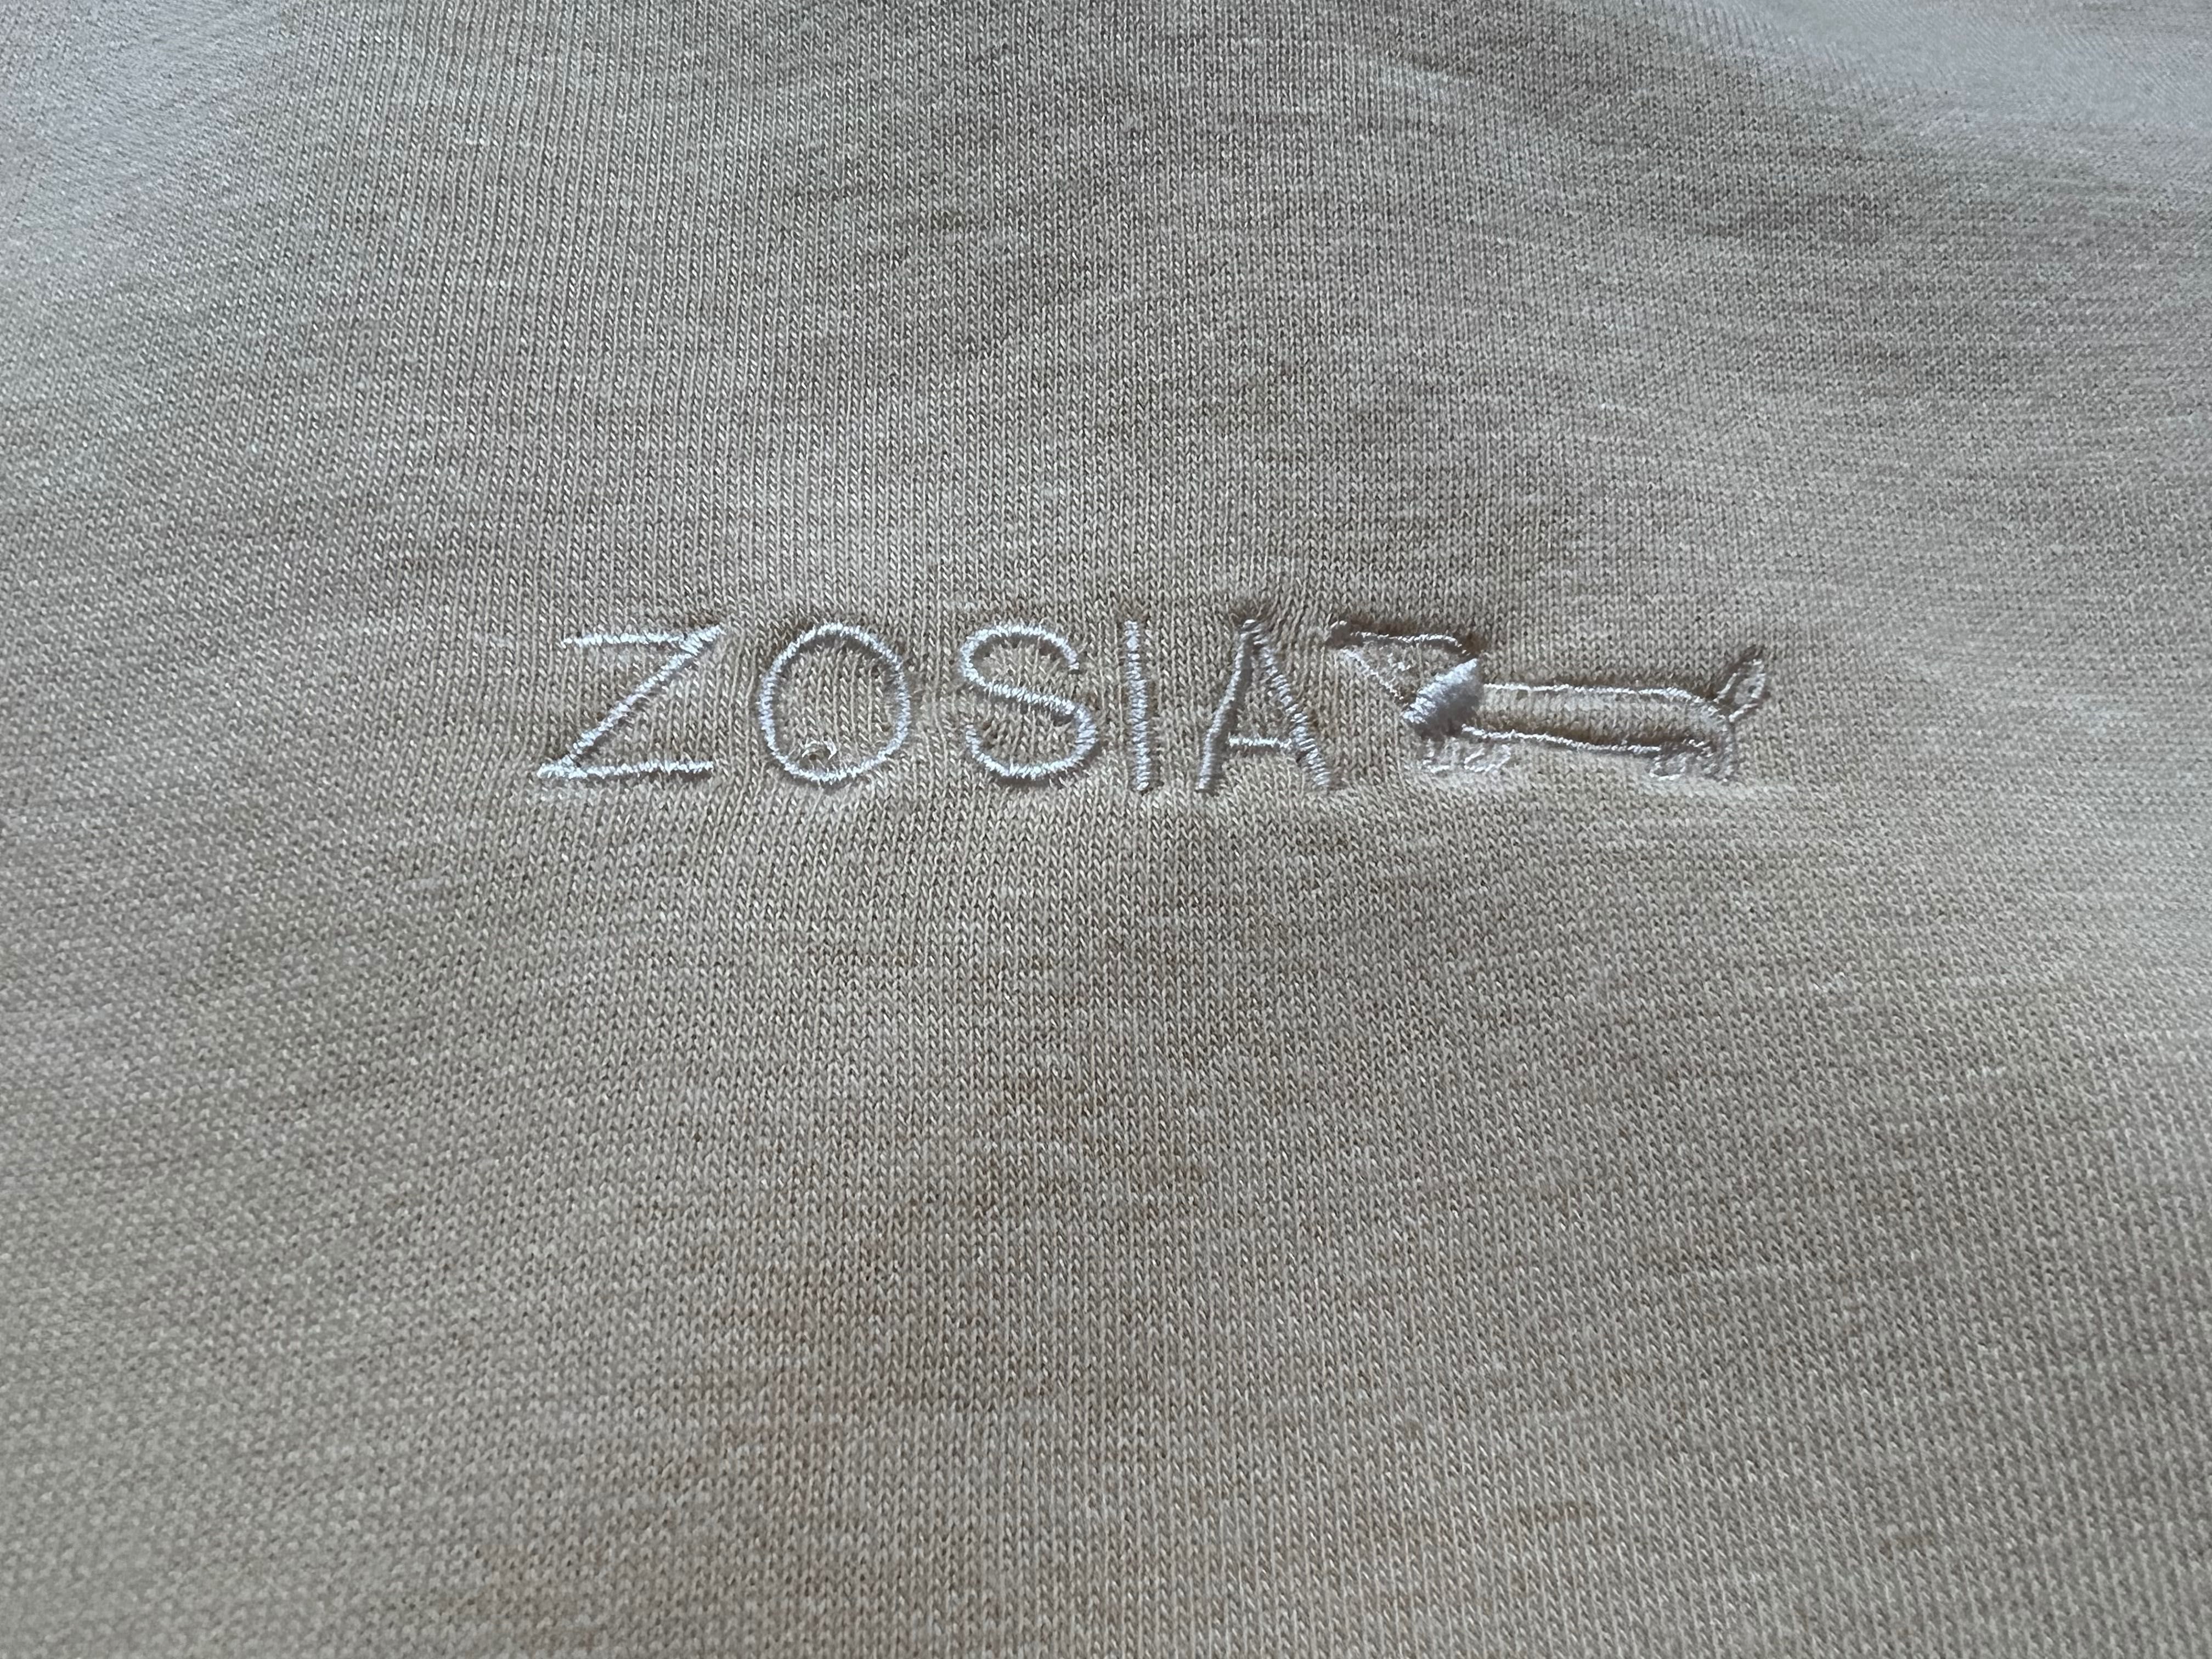 Bluza Zara 116cm imię ZOSIA